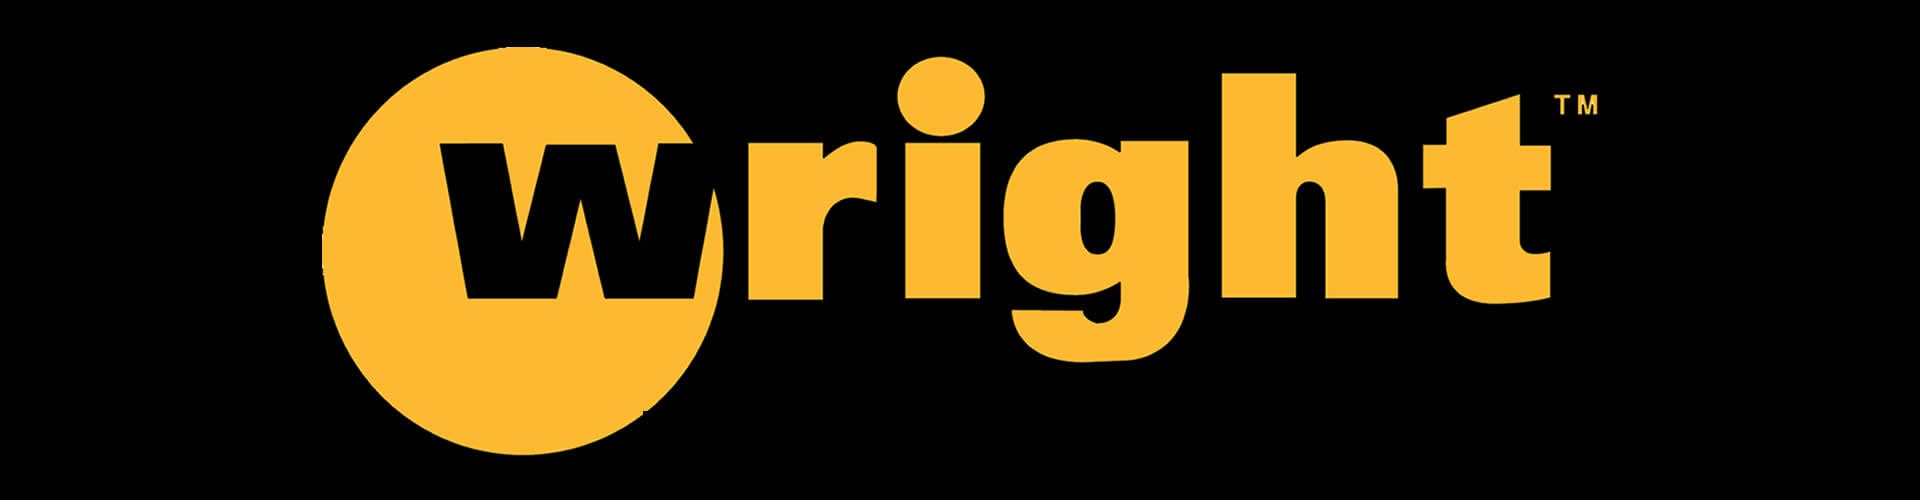 Wright Logo - Big League Lawns, LLC. Wright